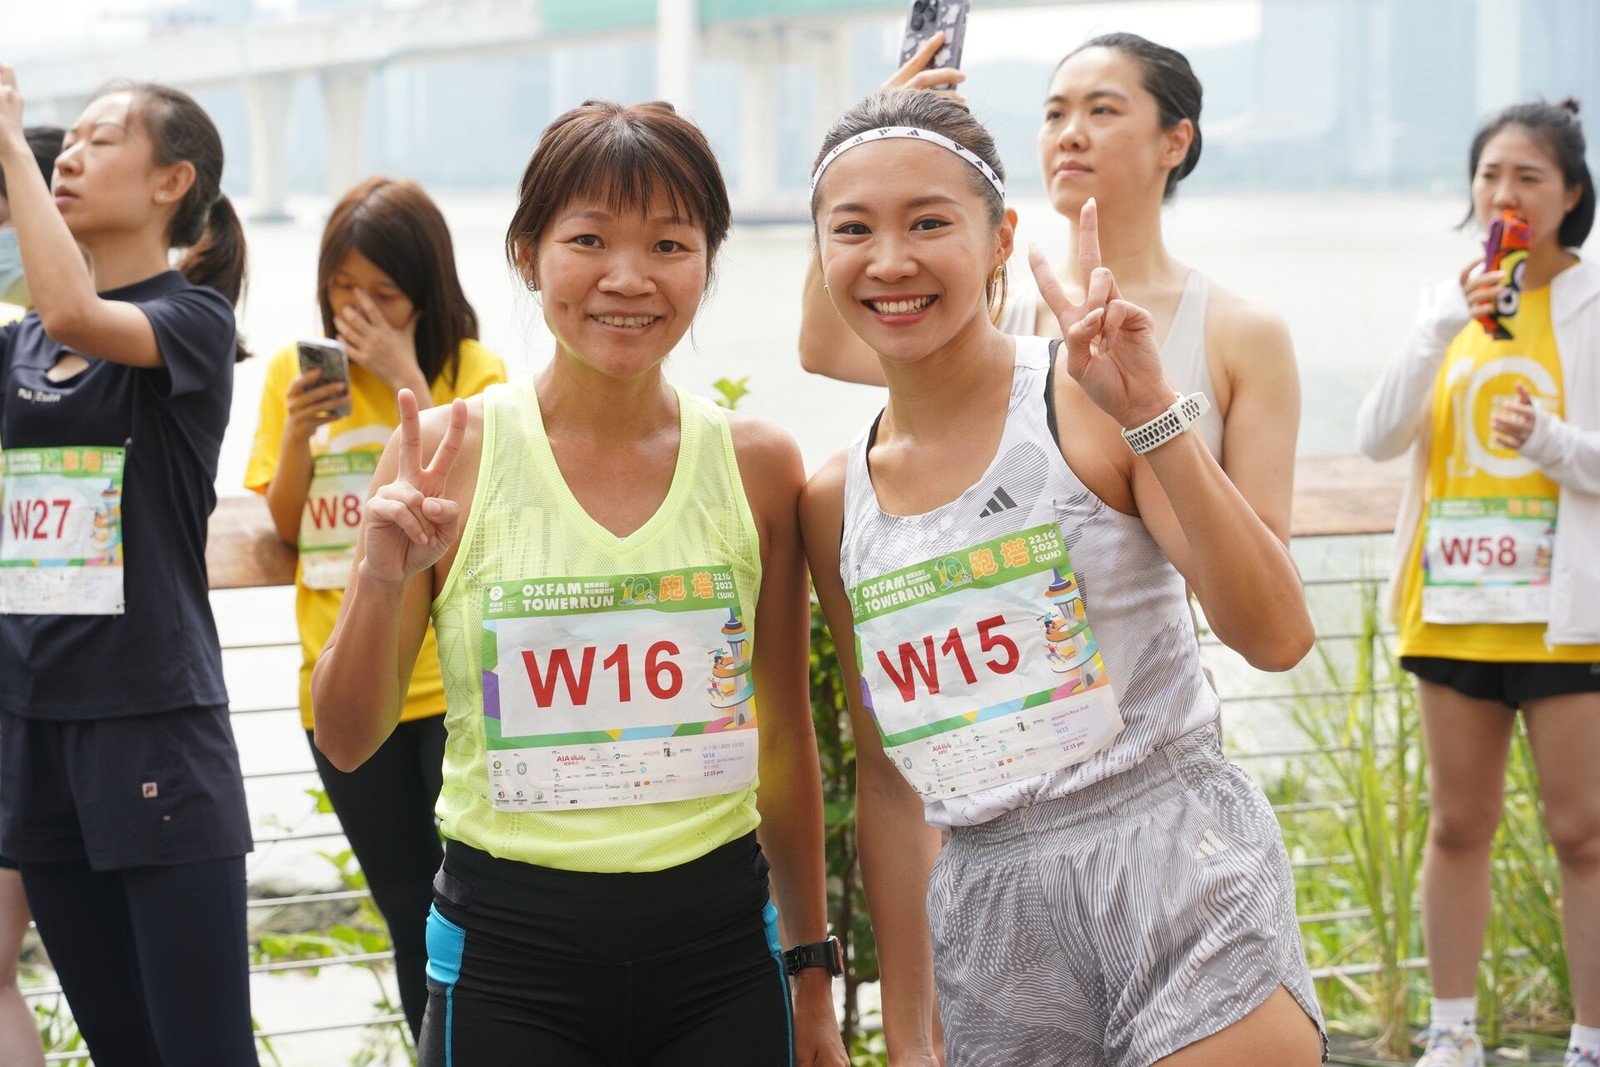 Leung Ying Suet, Hong Kong Trail Runner and Alicia, Hong Kong Runner